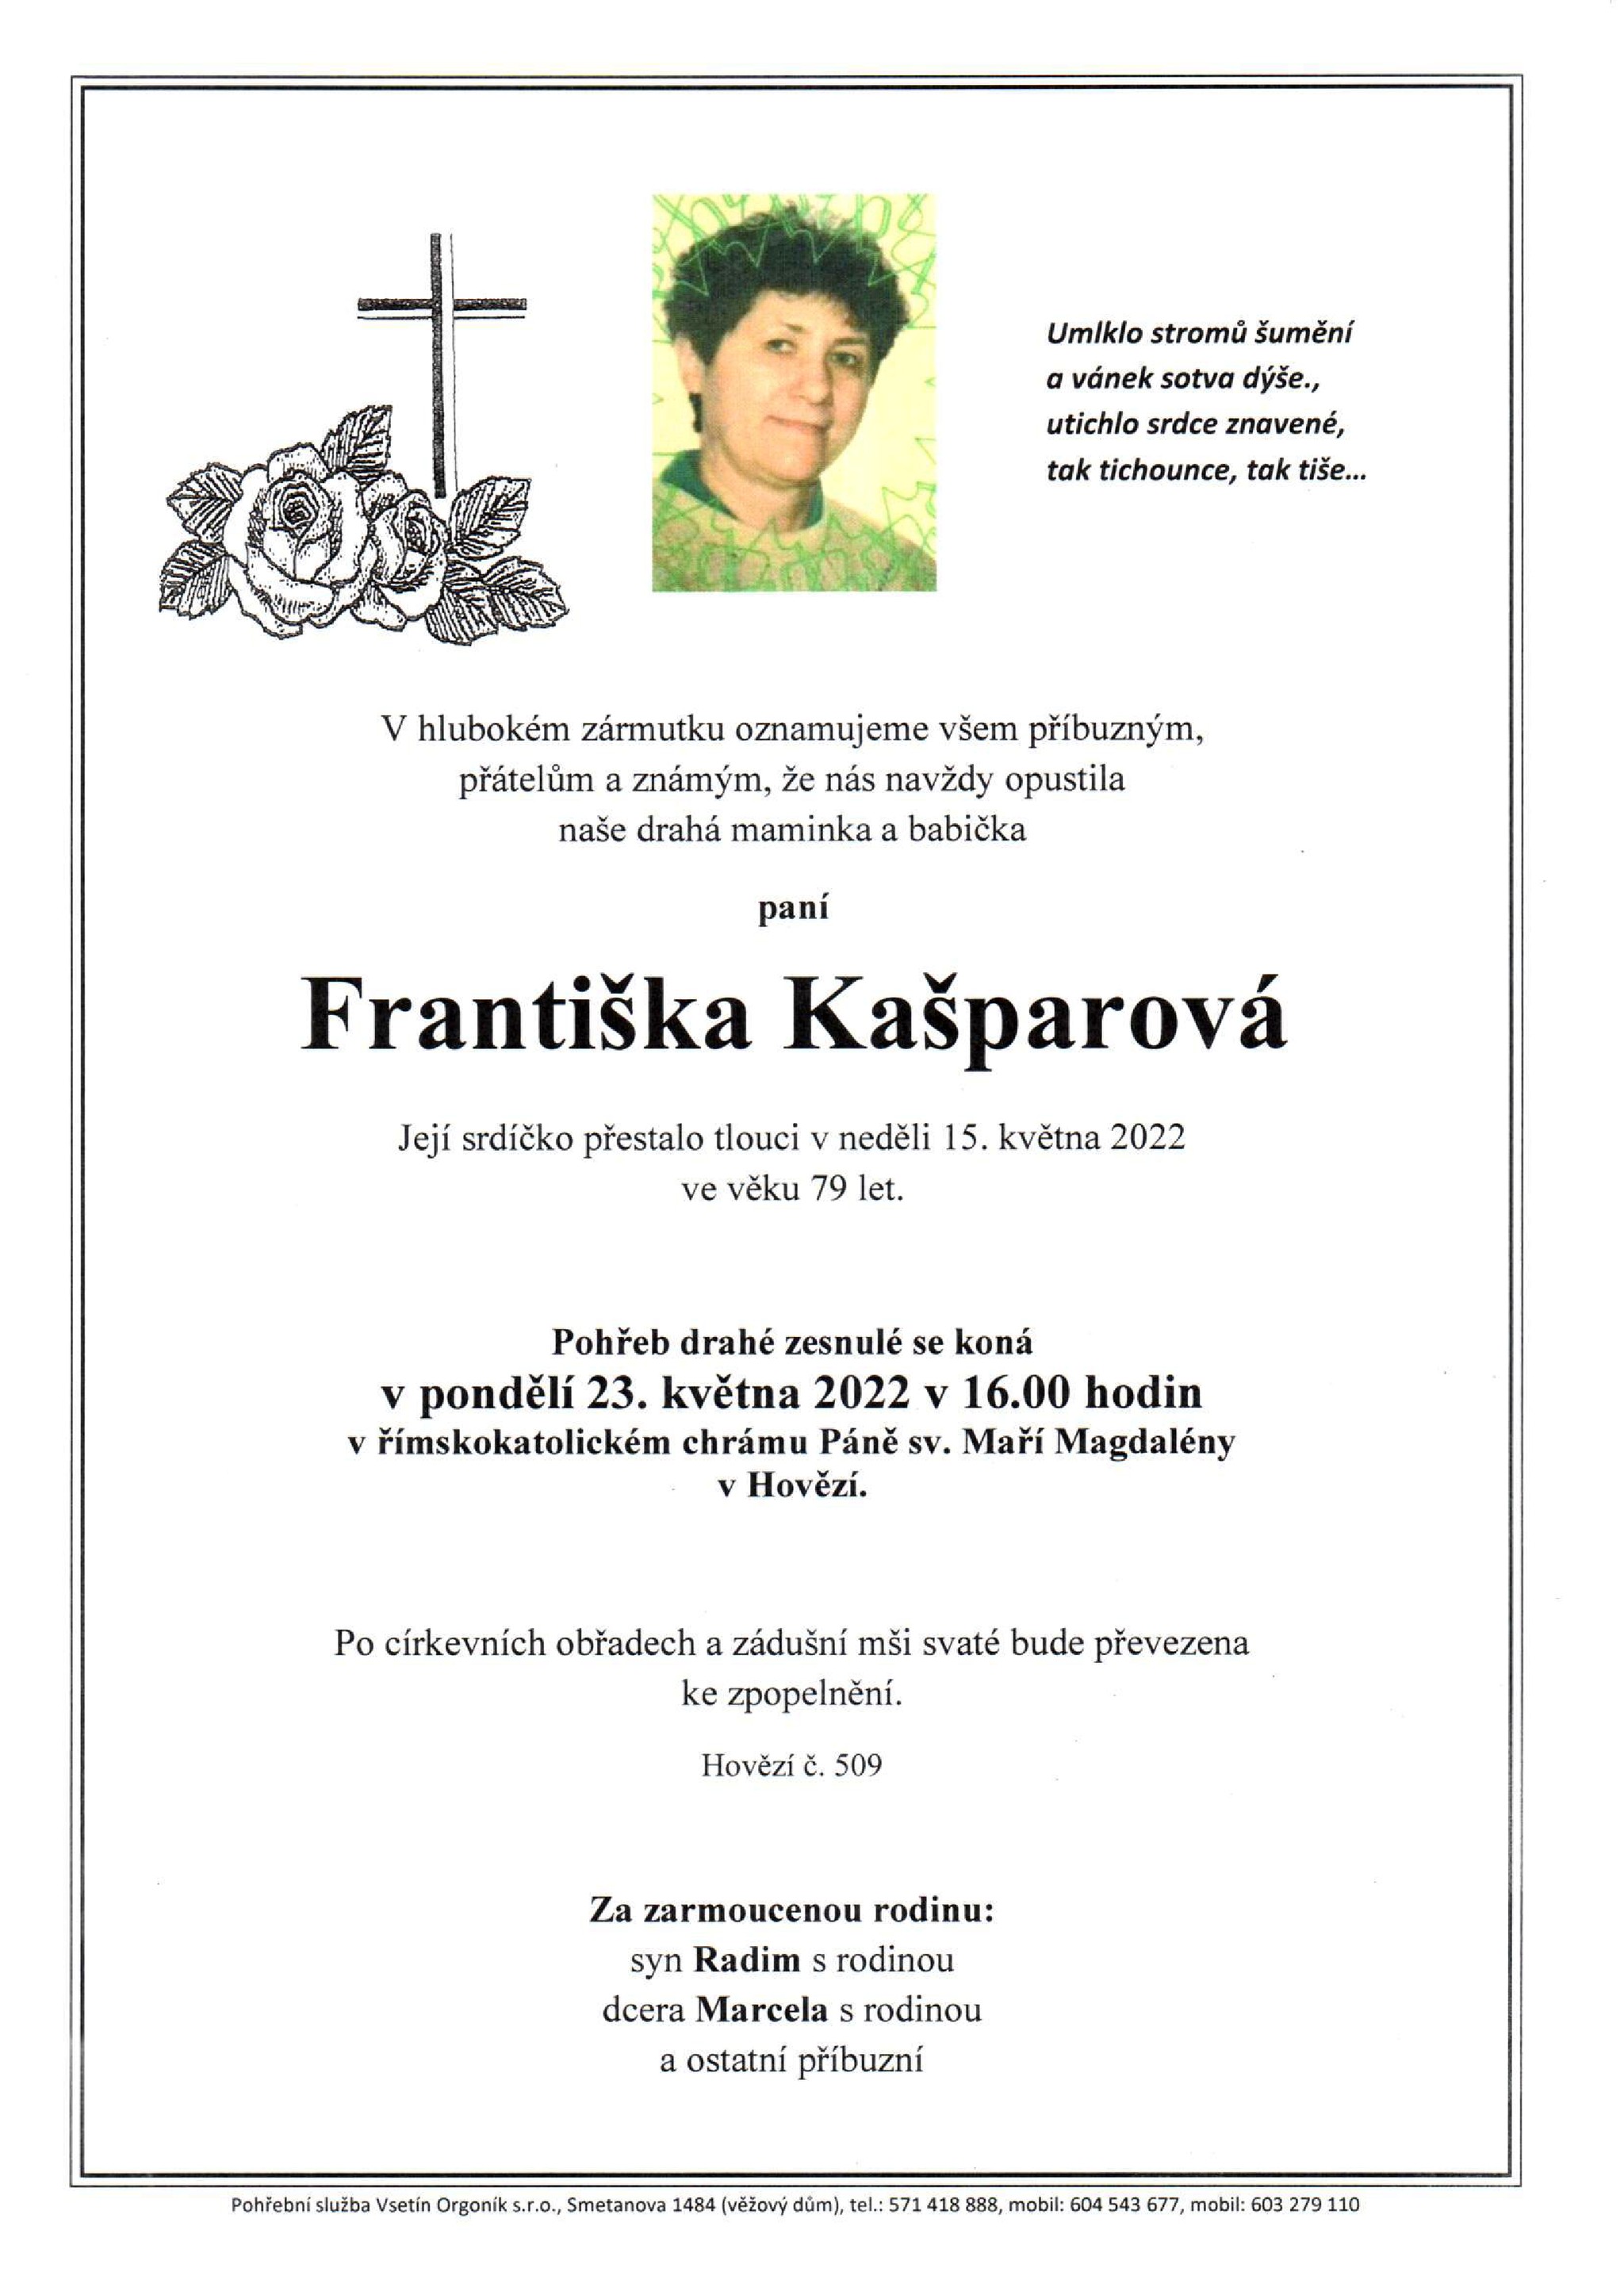 Františka Kašparová